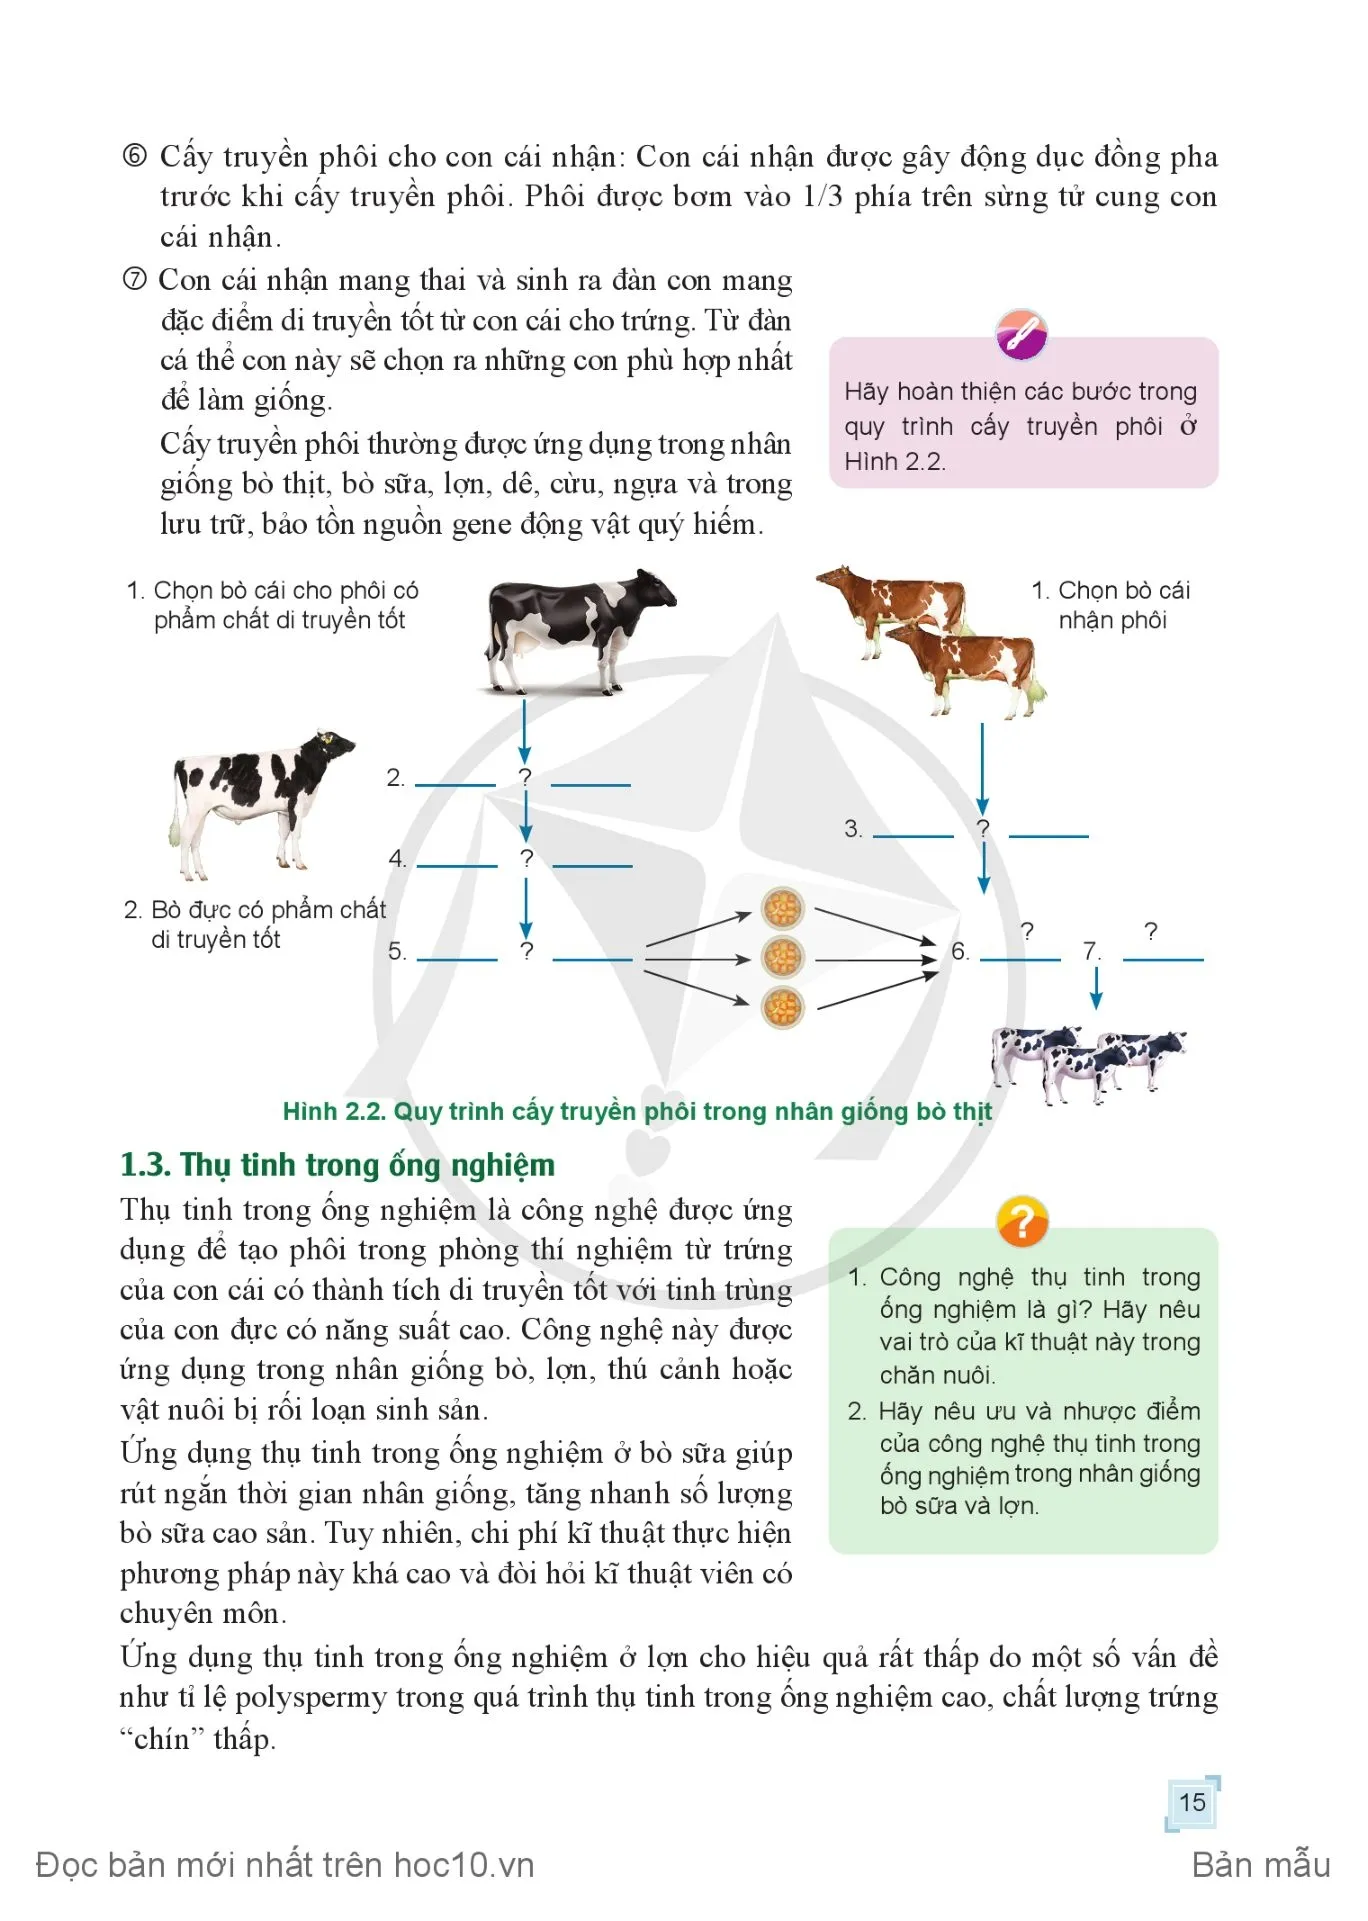 Bài 2. Ứng dụng công nghệ sinh học trong chăn nuôi.